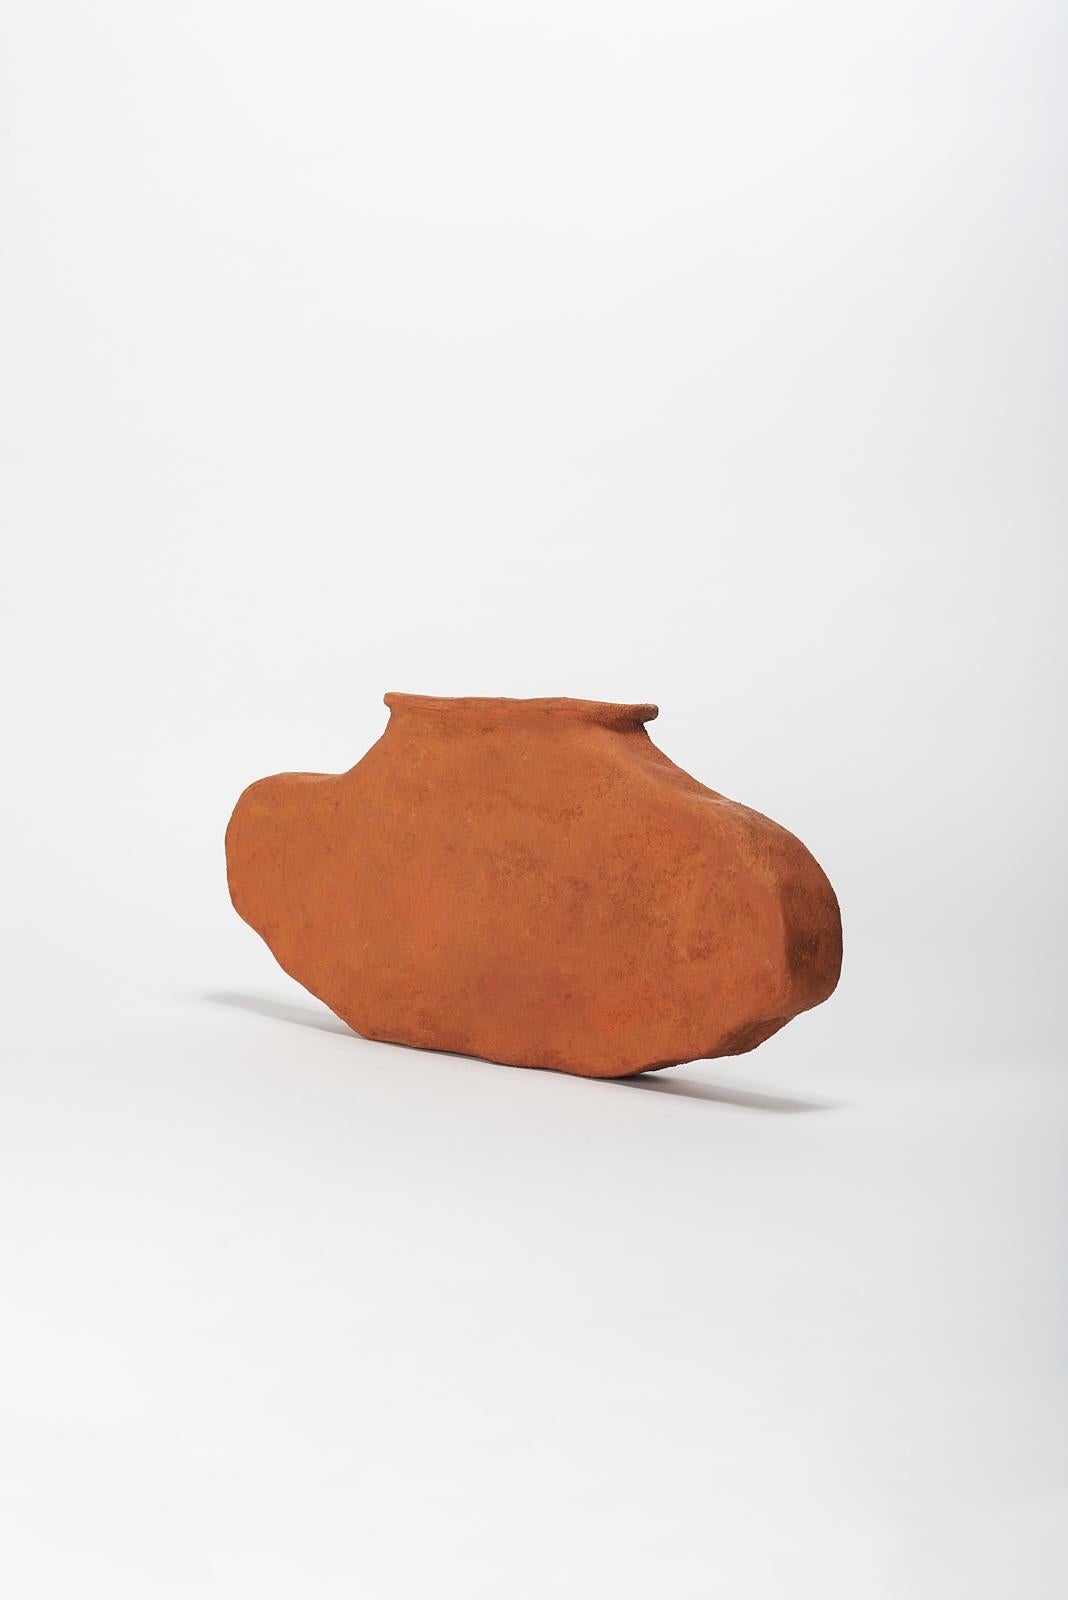 Post-Modern Lata Vase by Willem Van Hooff For Sale